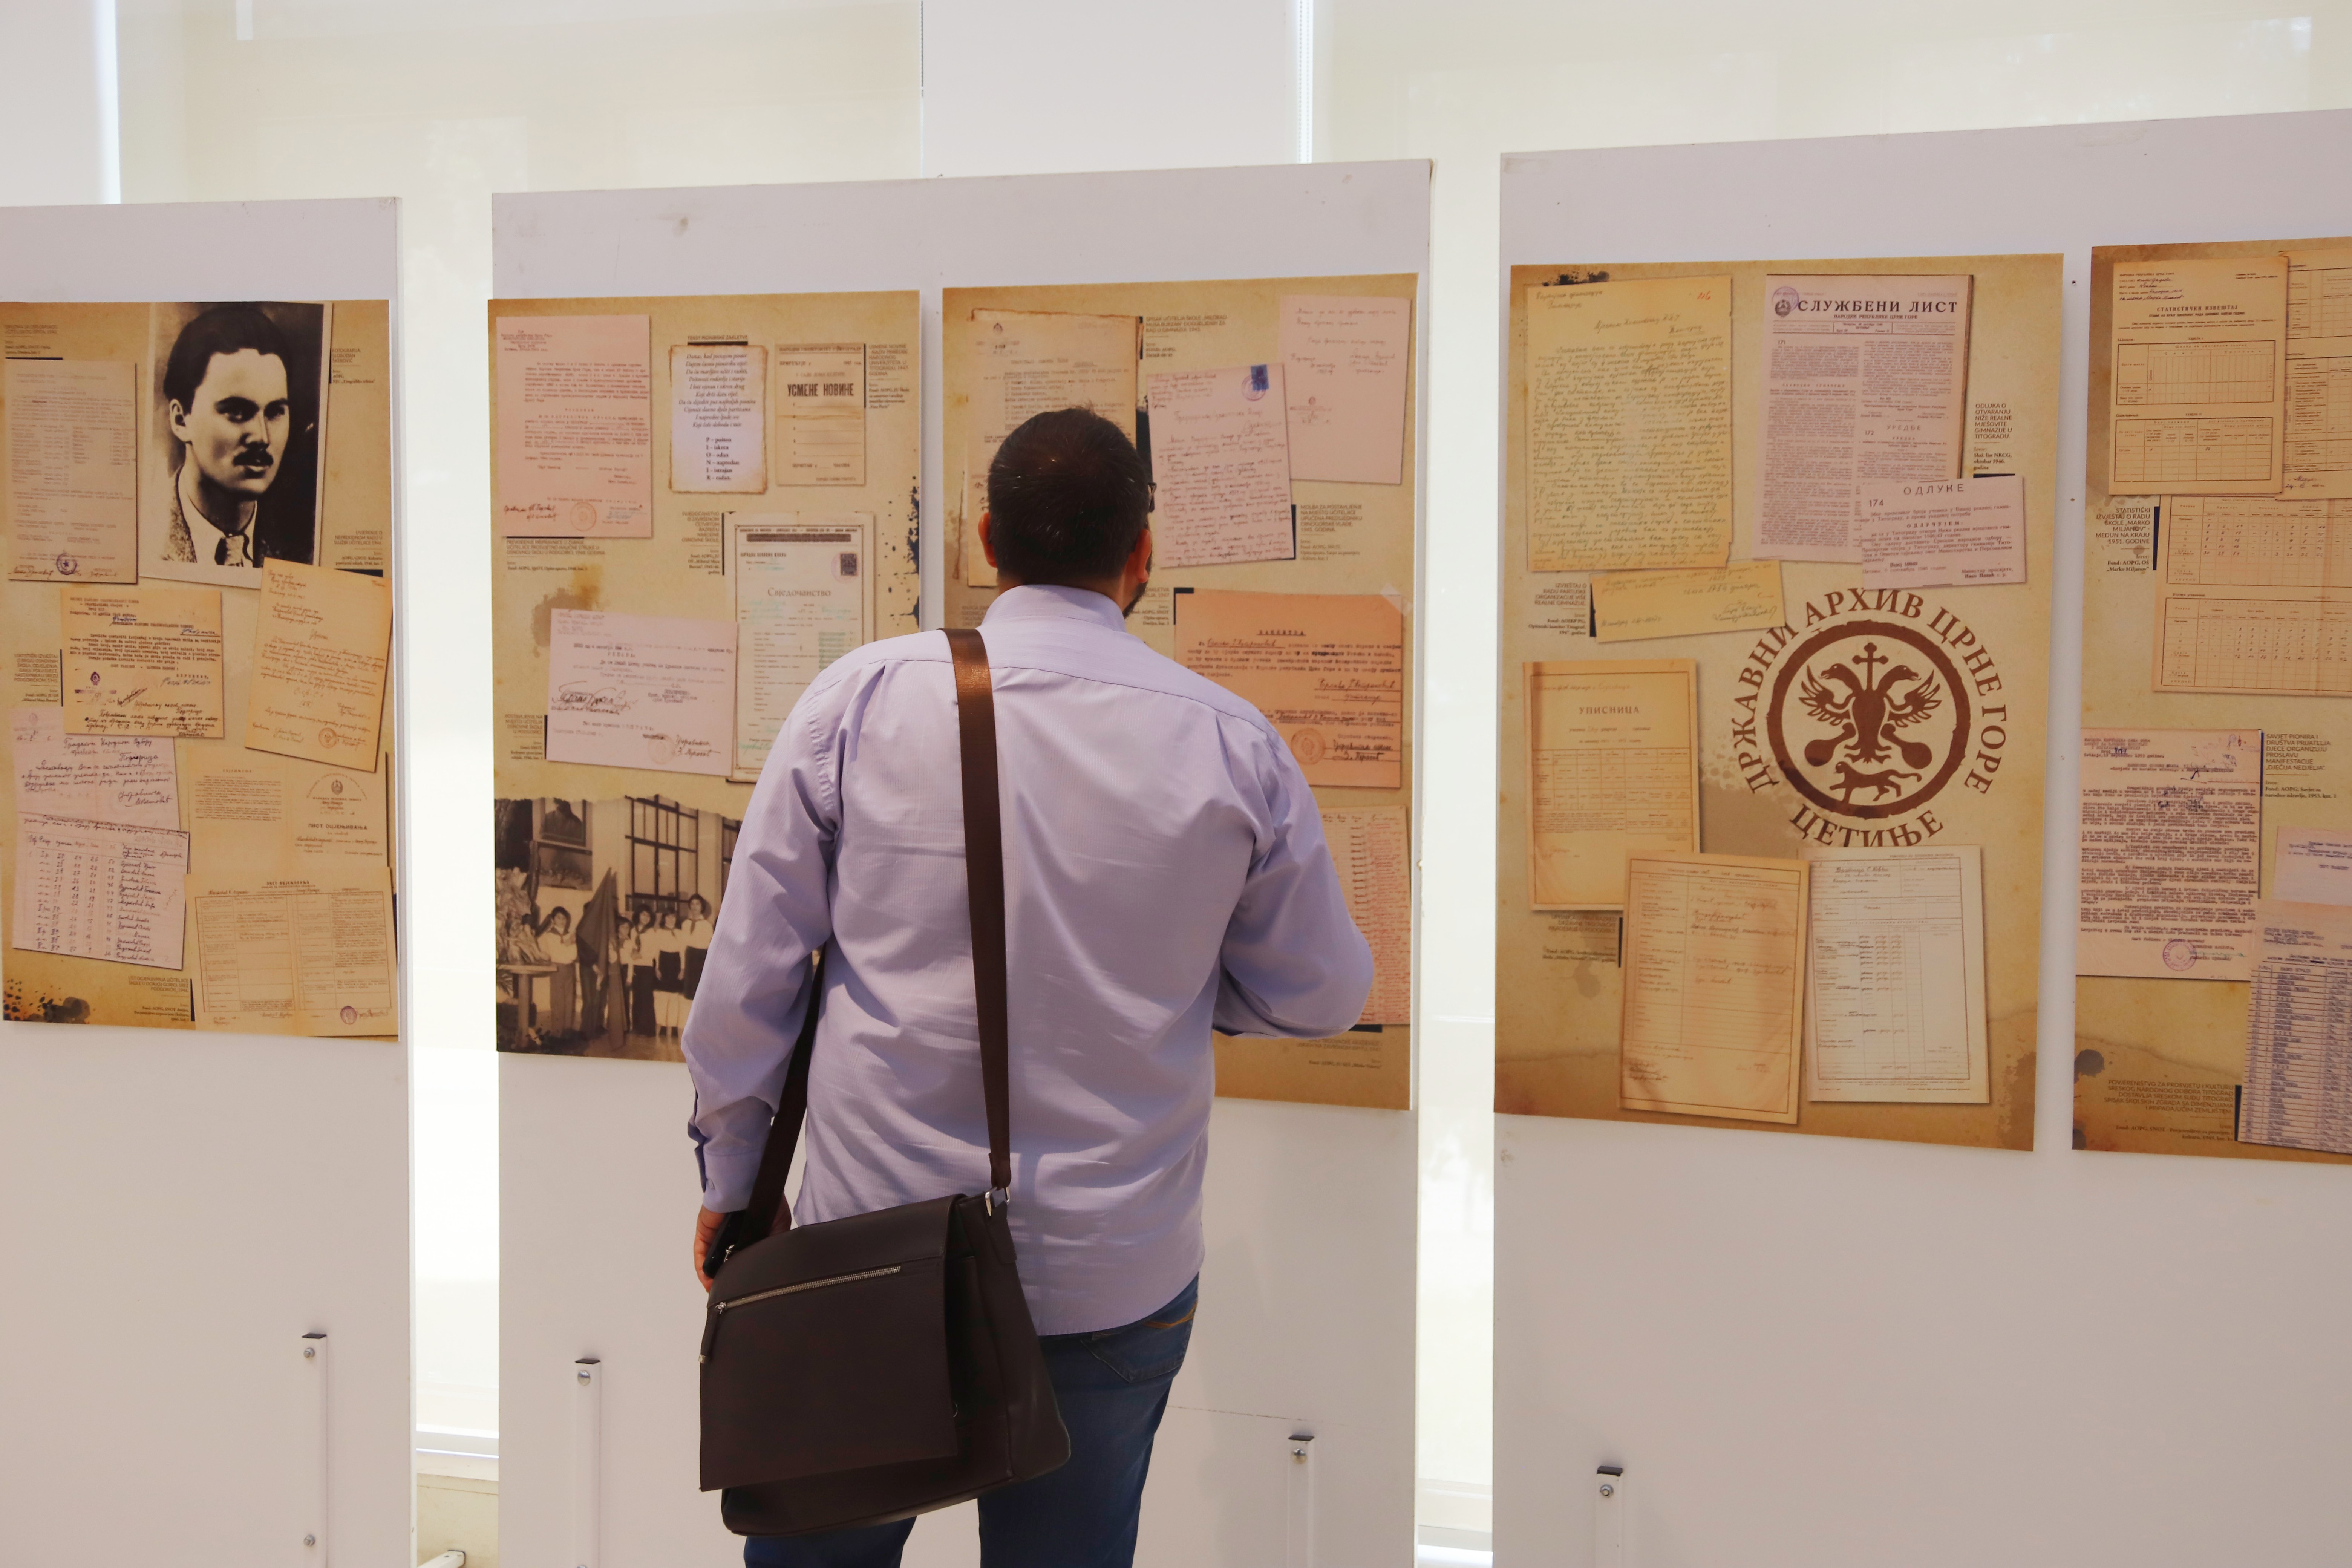 Šaranović otvorio izložbu dokumenata i fotografija “Prosvjeta u Podgorici”